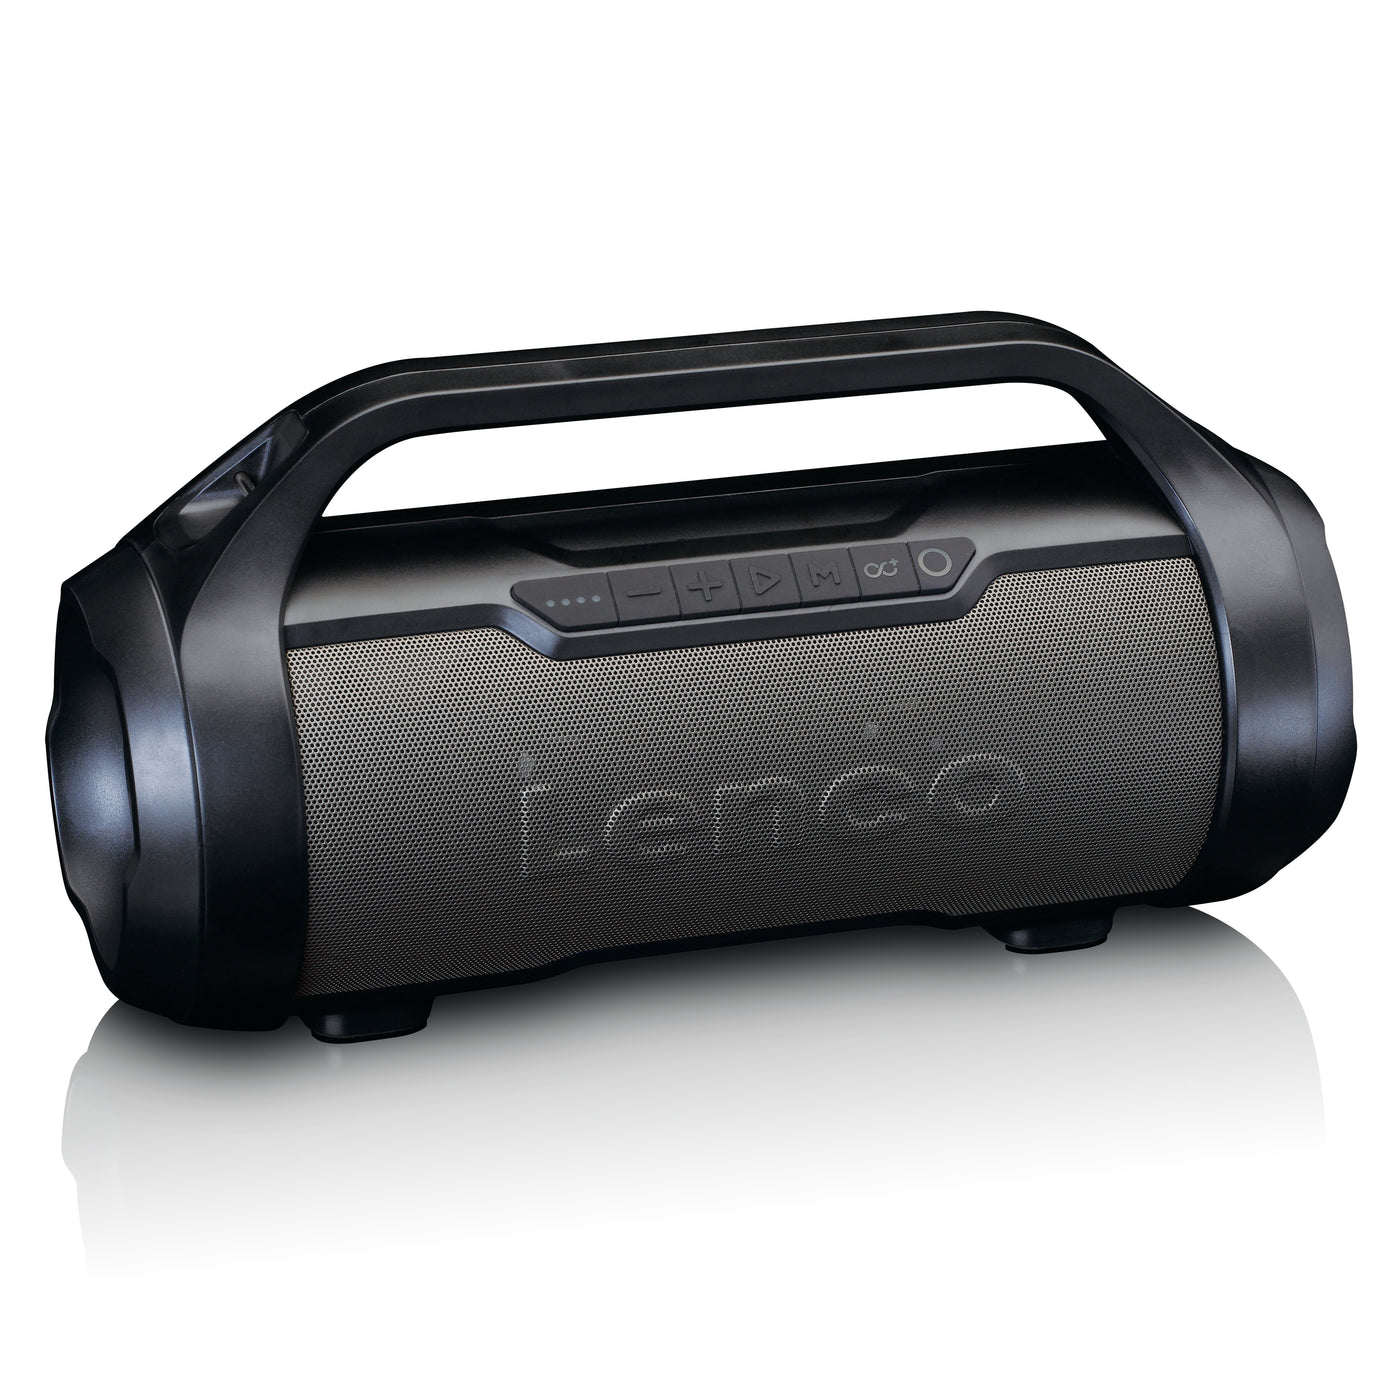 LENCO SPR-070BK - Odporny na zachlapania głośnik Bluetooth® z radiem FM, USB, SD i oświetleniem imprezowym - Czarny